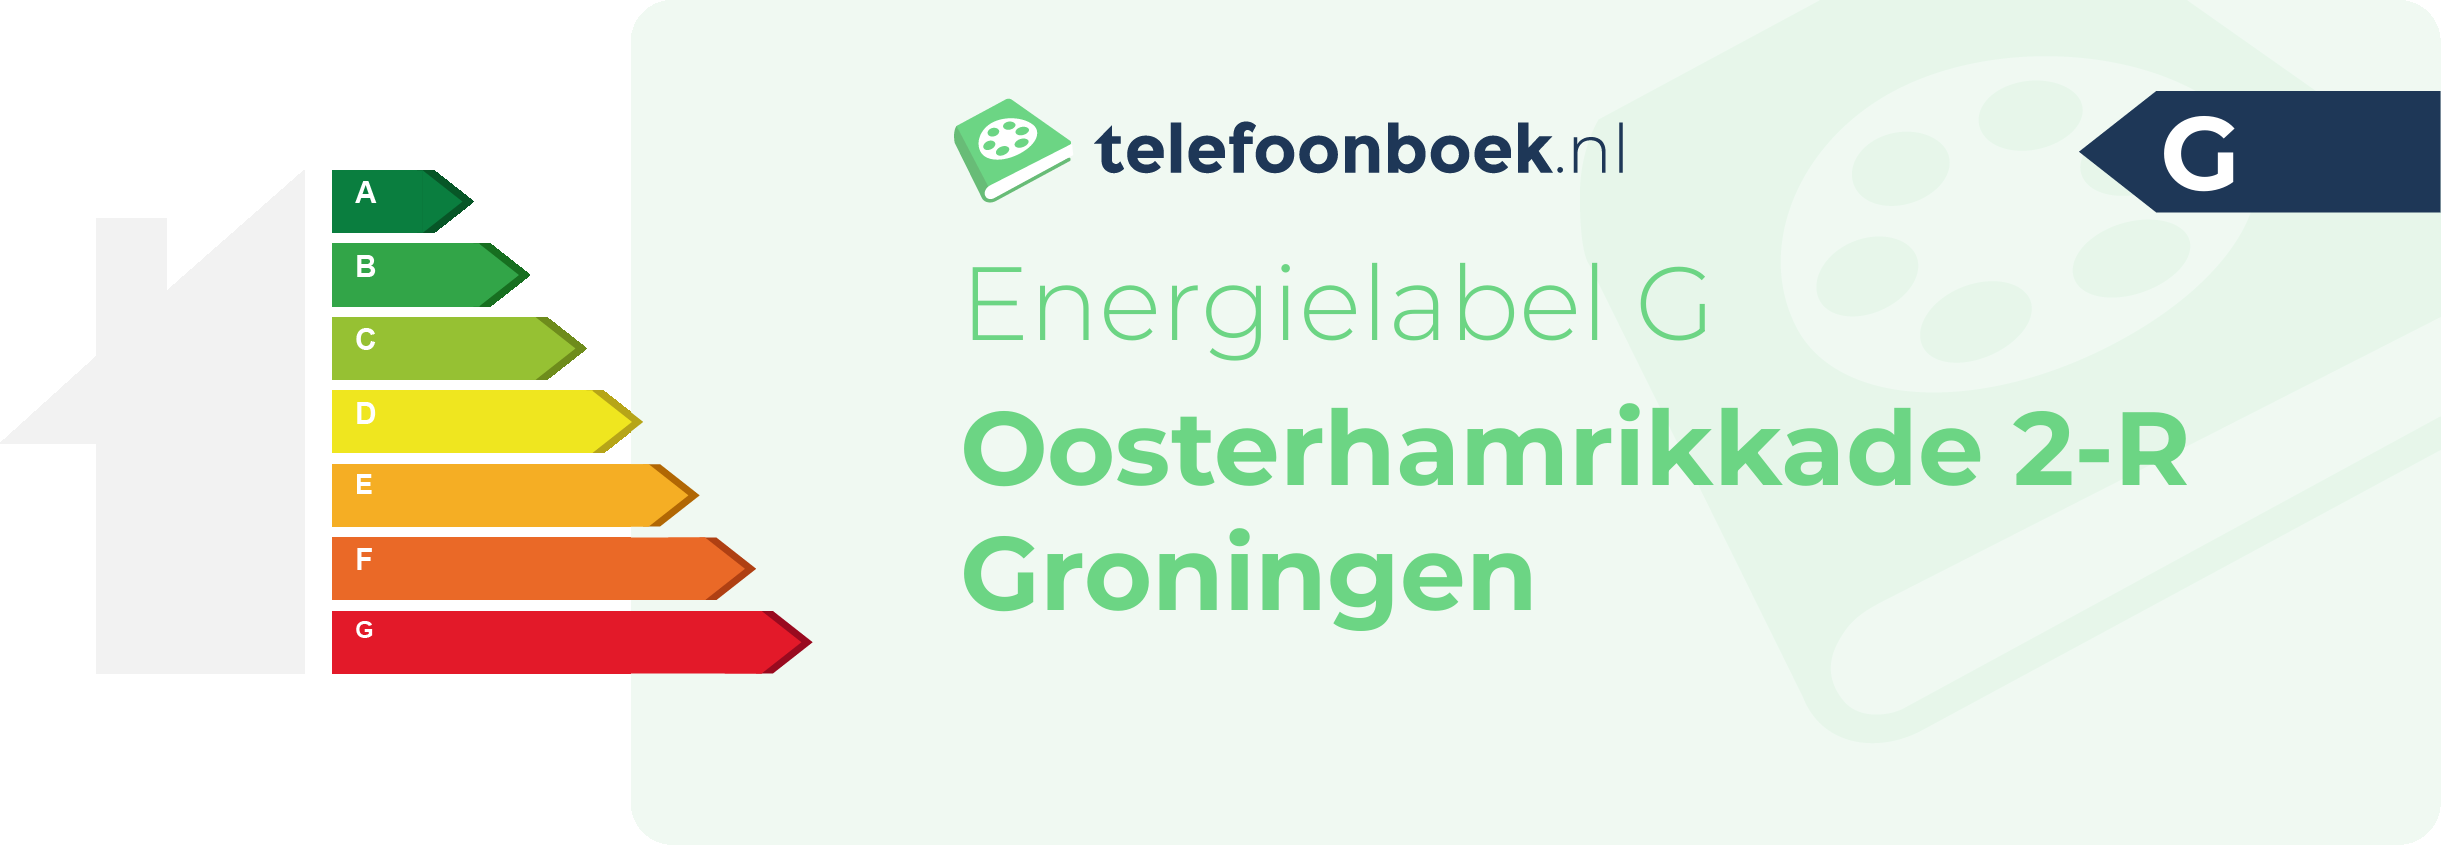 Energielabel Oosterhamrikkade 2-R Groningen